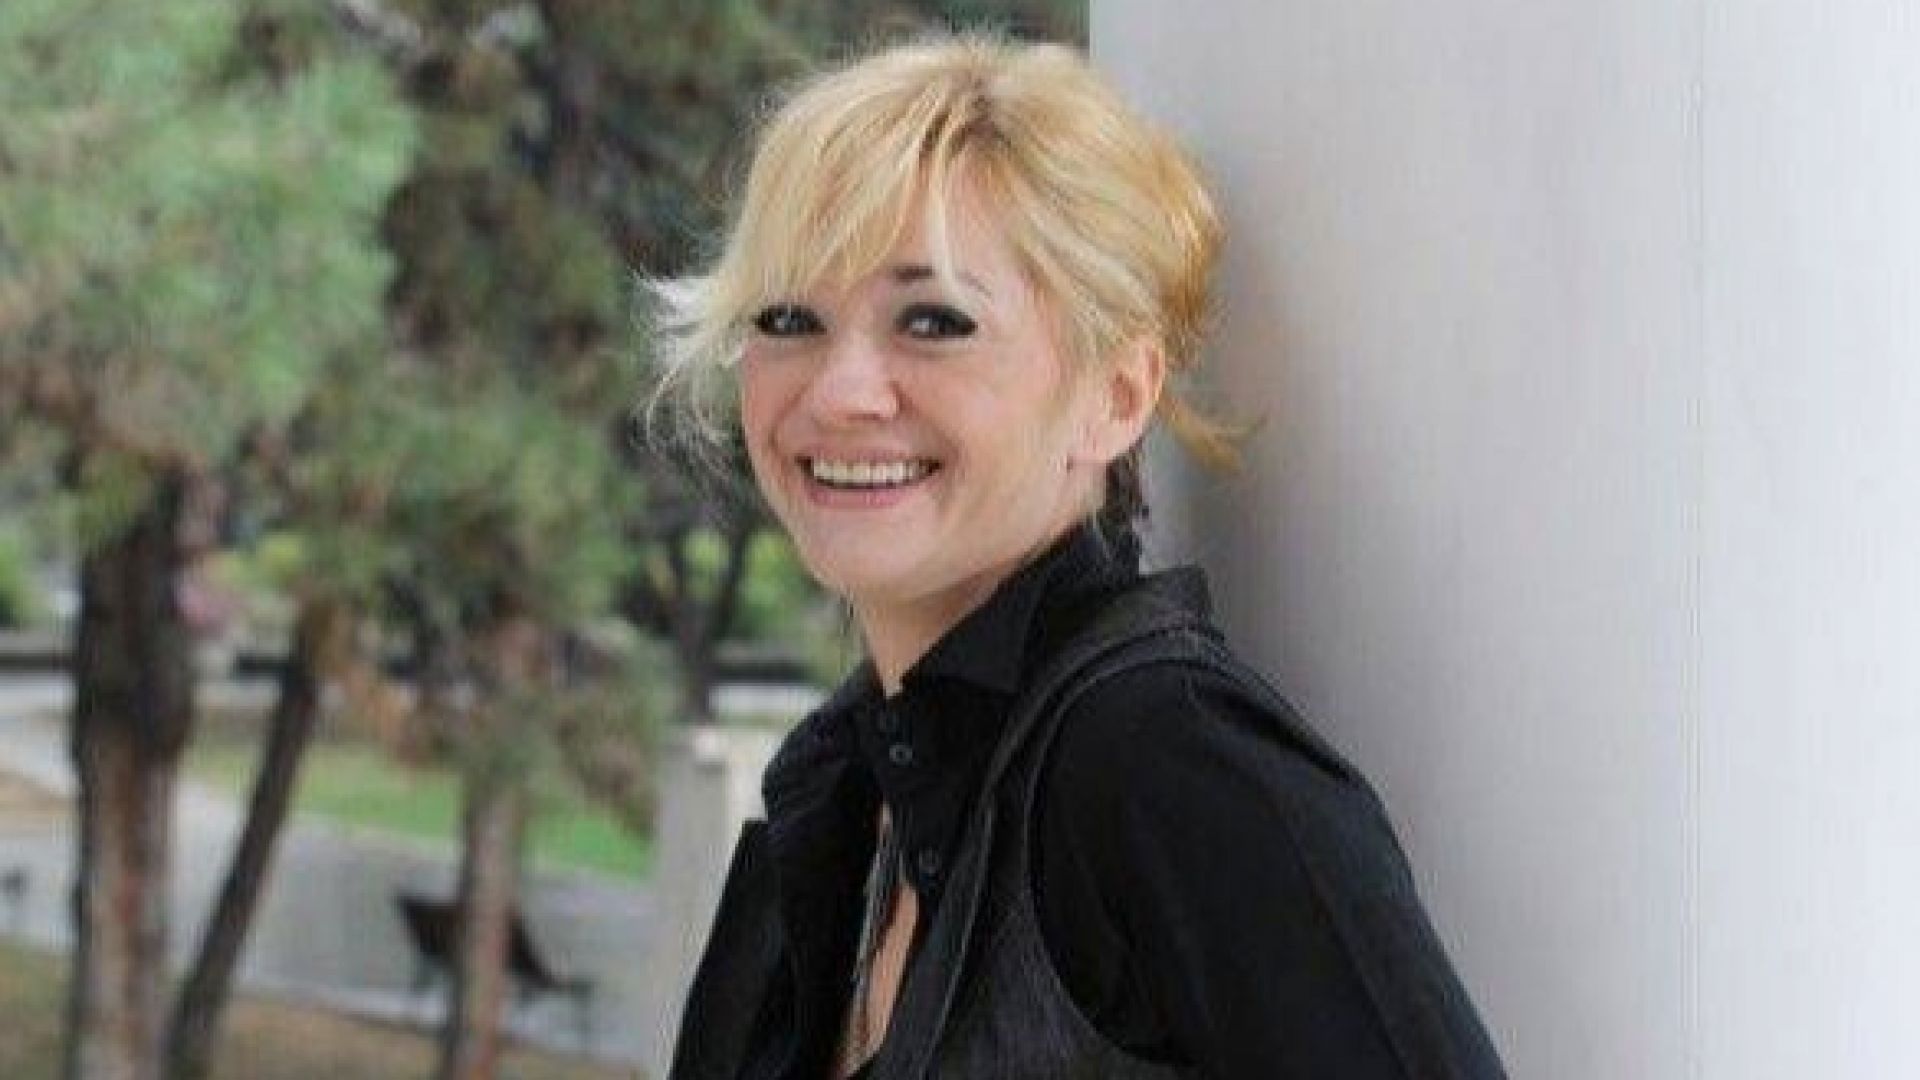 Македонската актриса и бивша кметица на скопската община Кисела вода